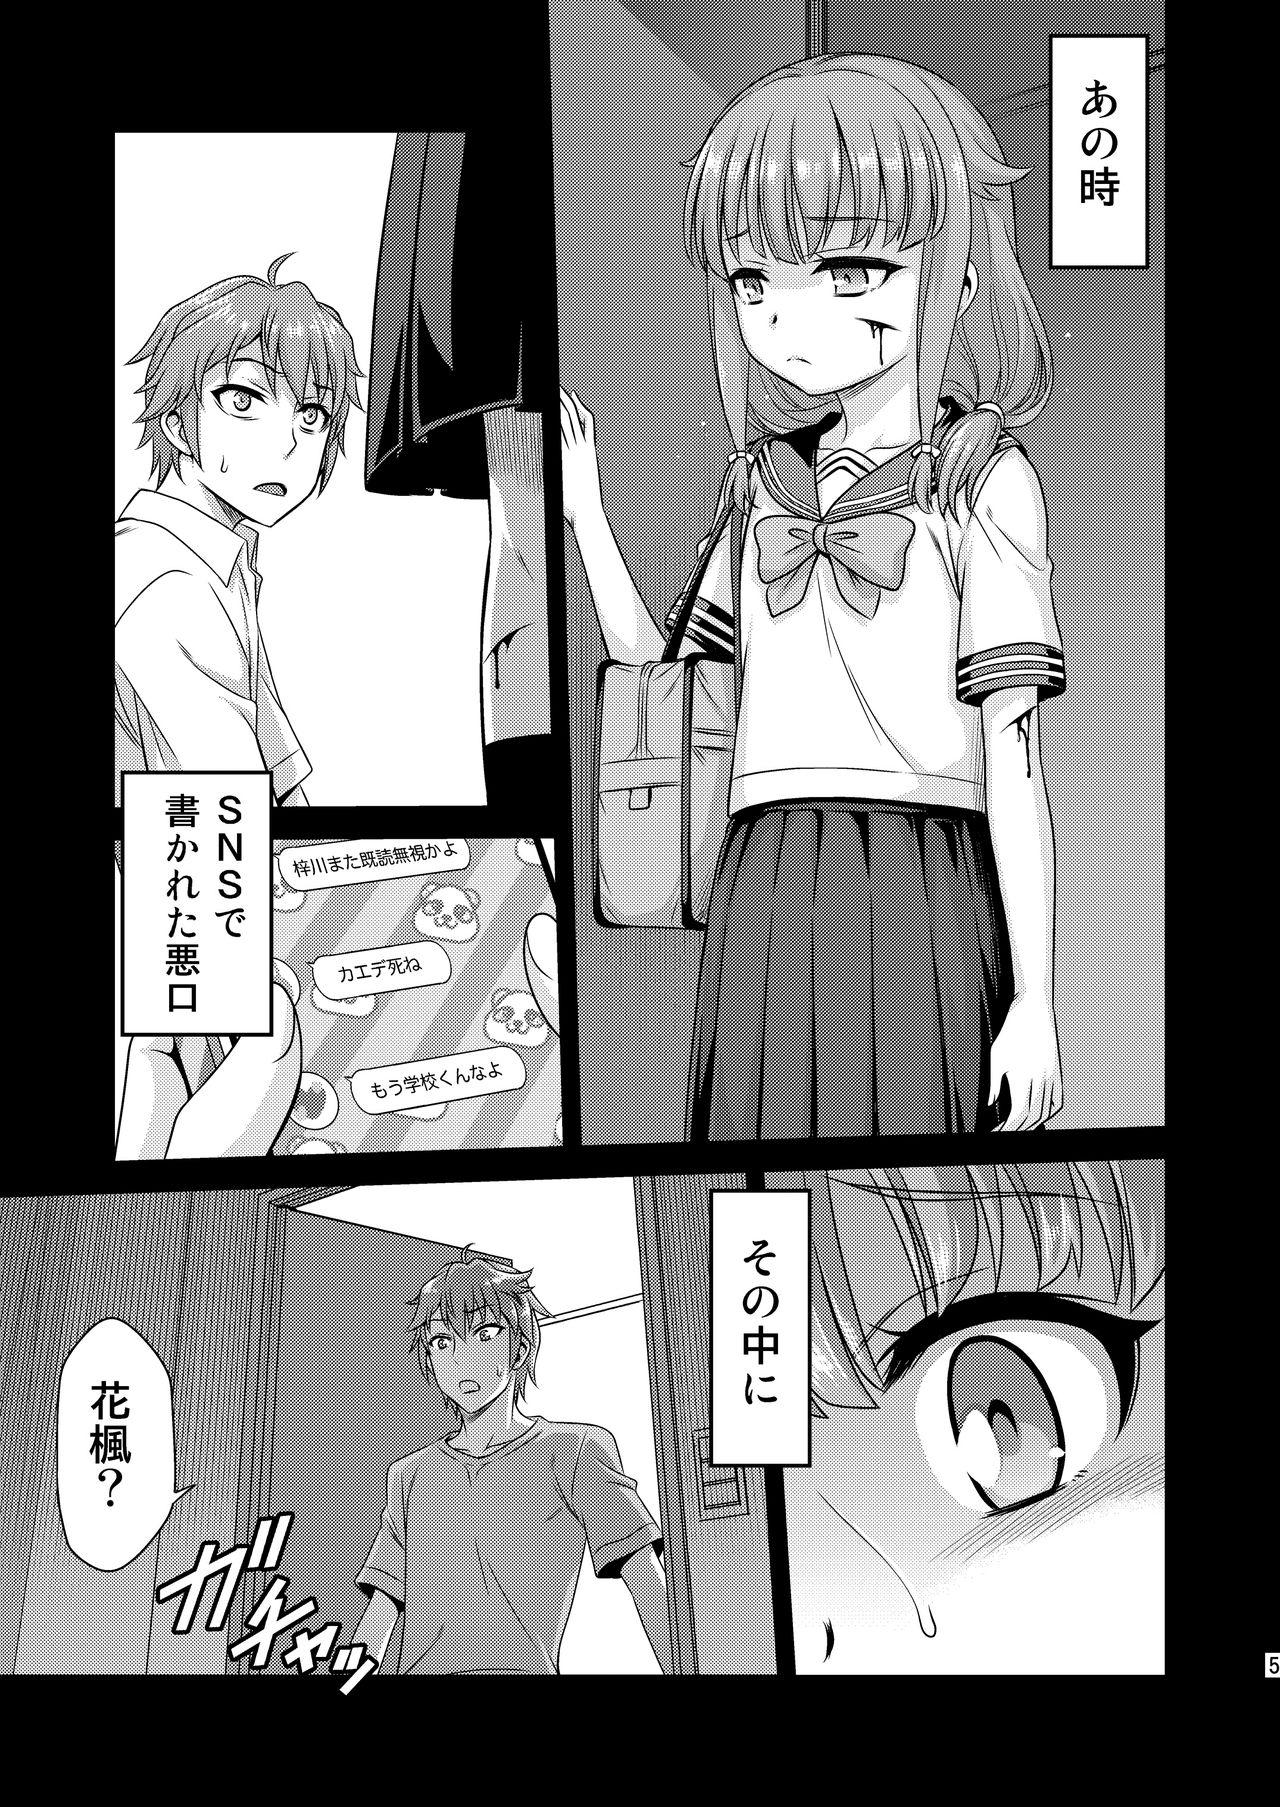 Spy Kaede Shoukougun!! - Seishun buta yarou wa bunny girl senpai no yume o minai De Quatro - Page 5